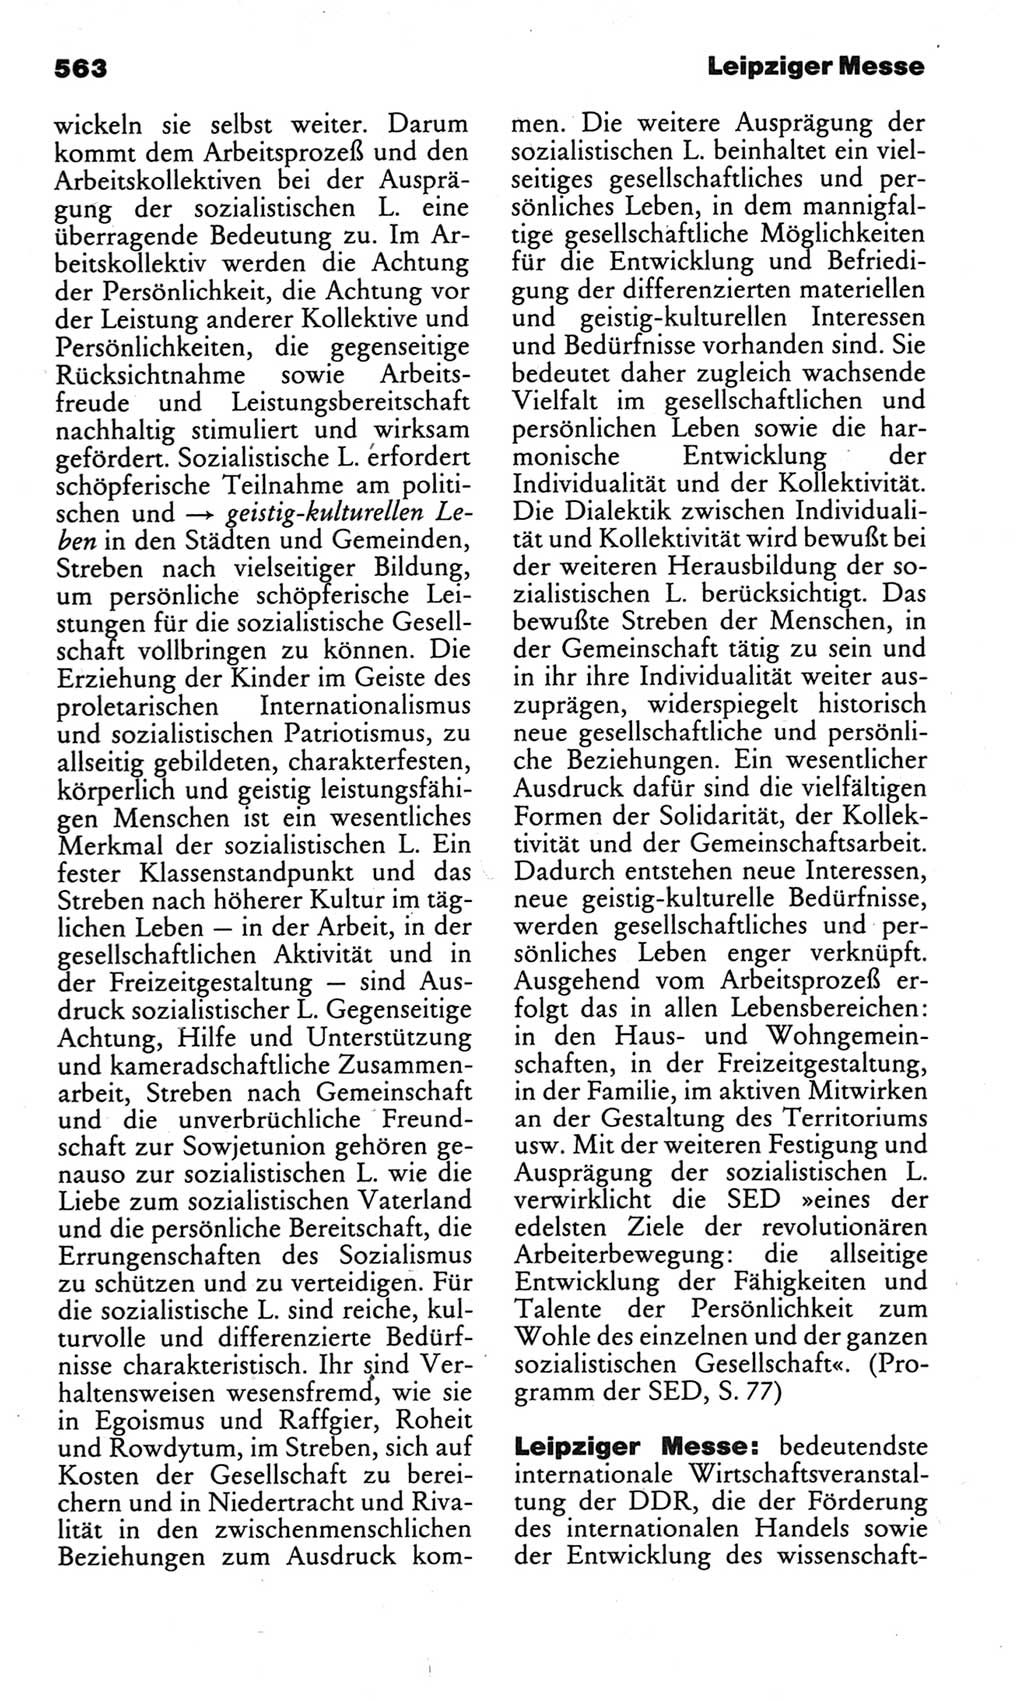 Kleines politisches Wörterbuch [Deutsche Demokratische Republik (DDR)] 1983, Seite 563 (Kl. pol. Wb. DDR 1983, S. 563)